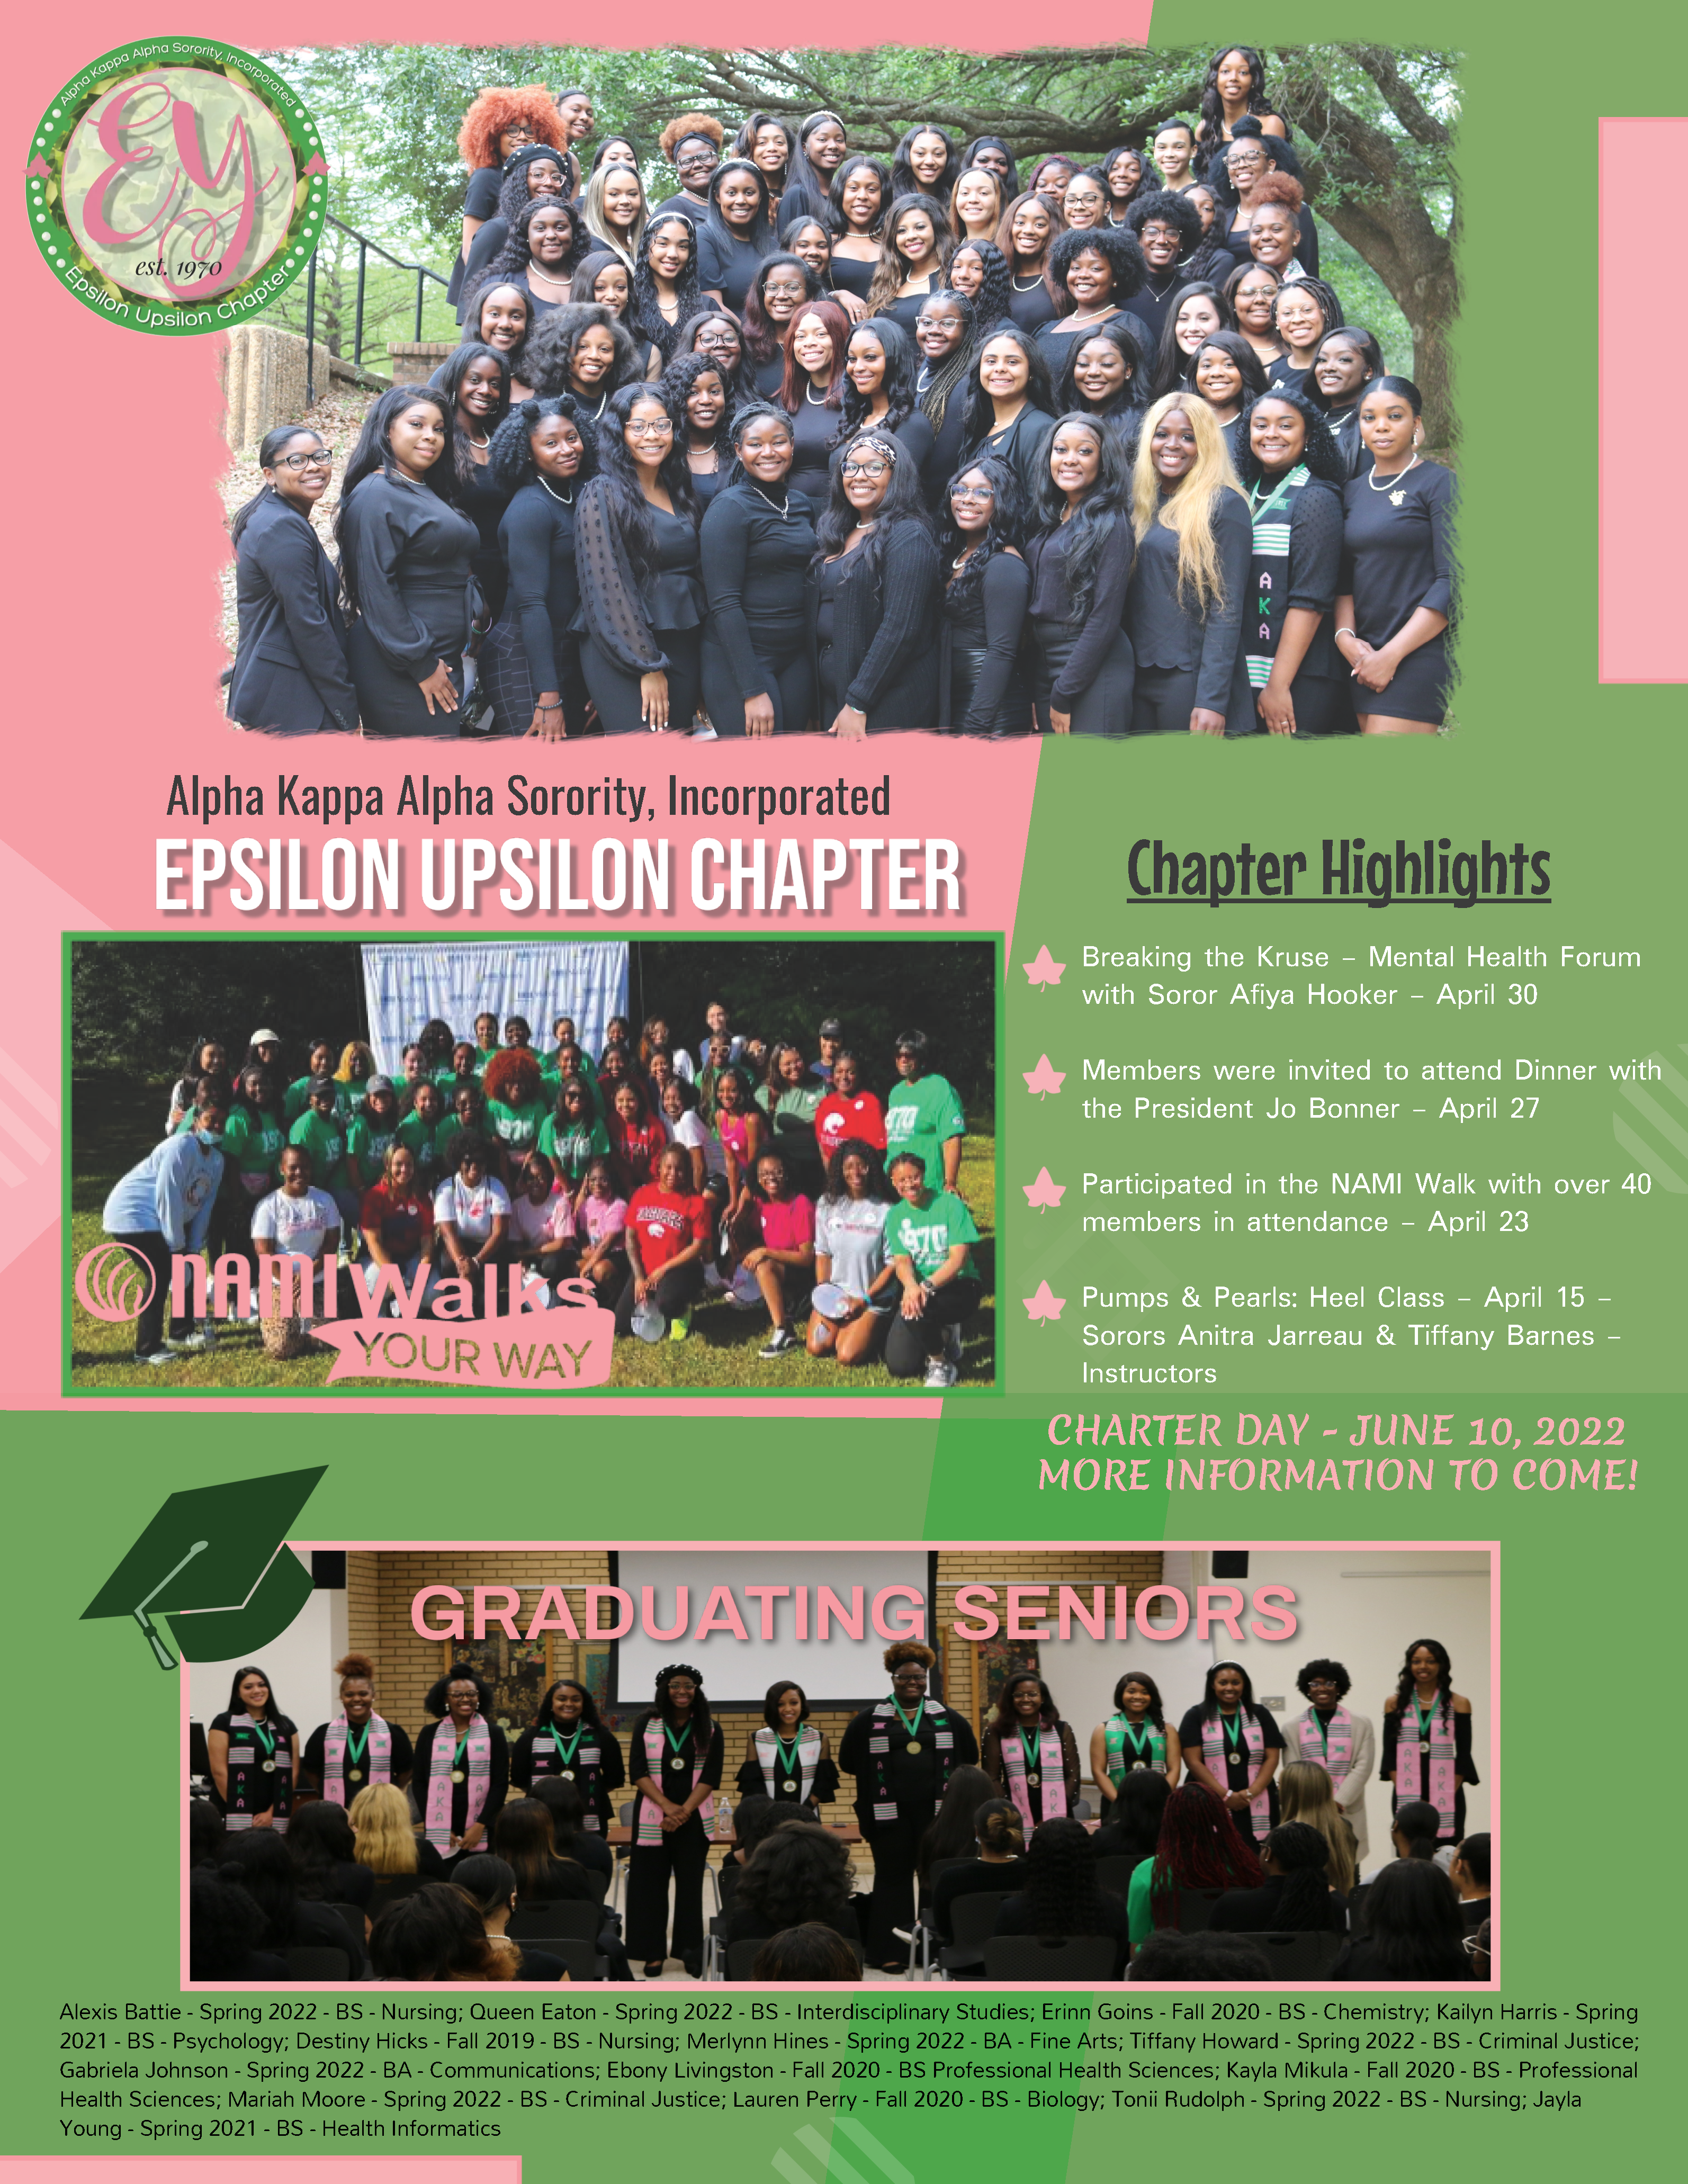 Epsilon Upsilon Chapter Highlights